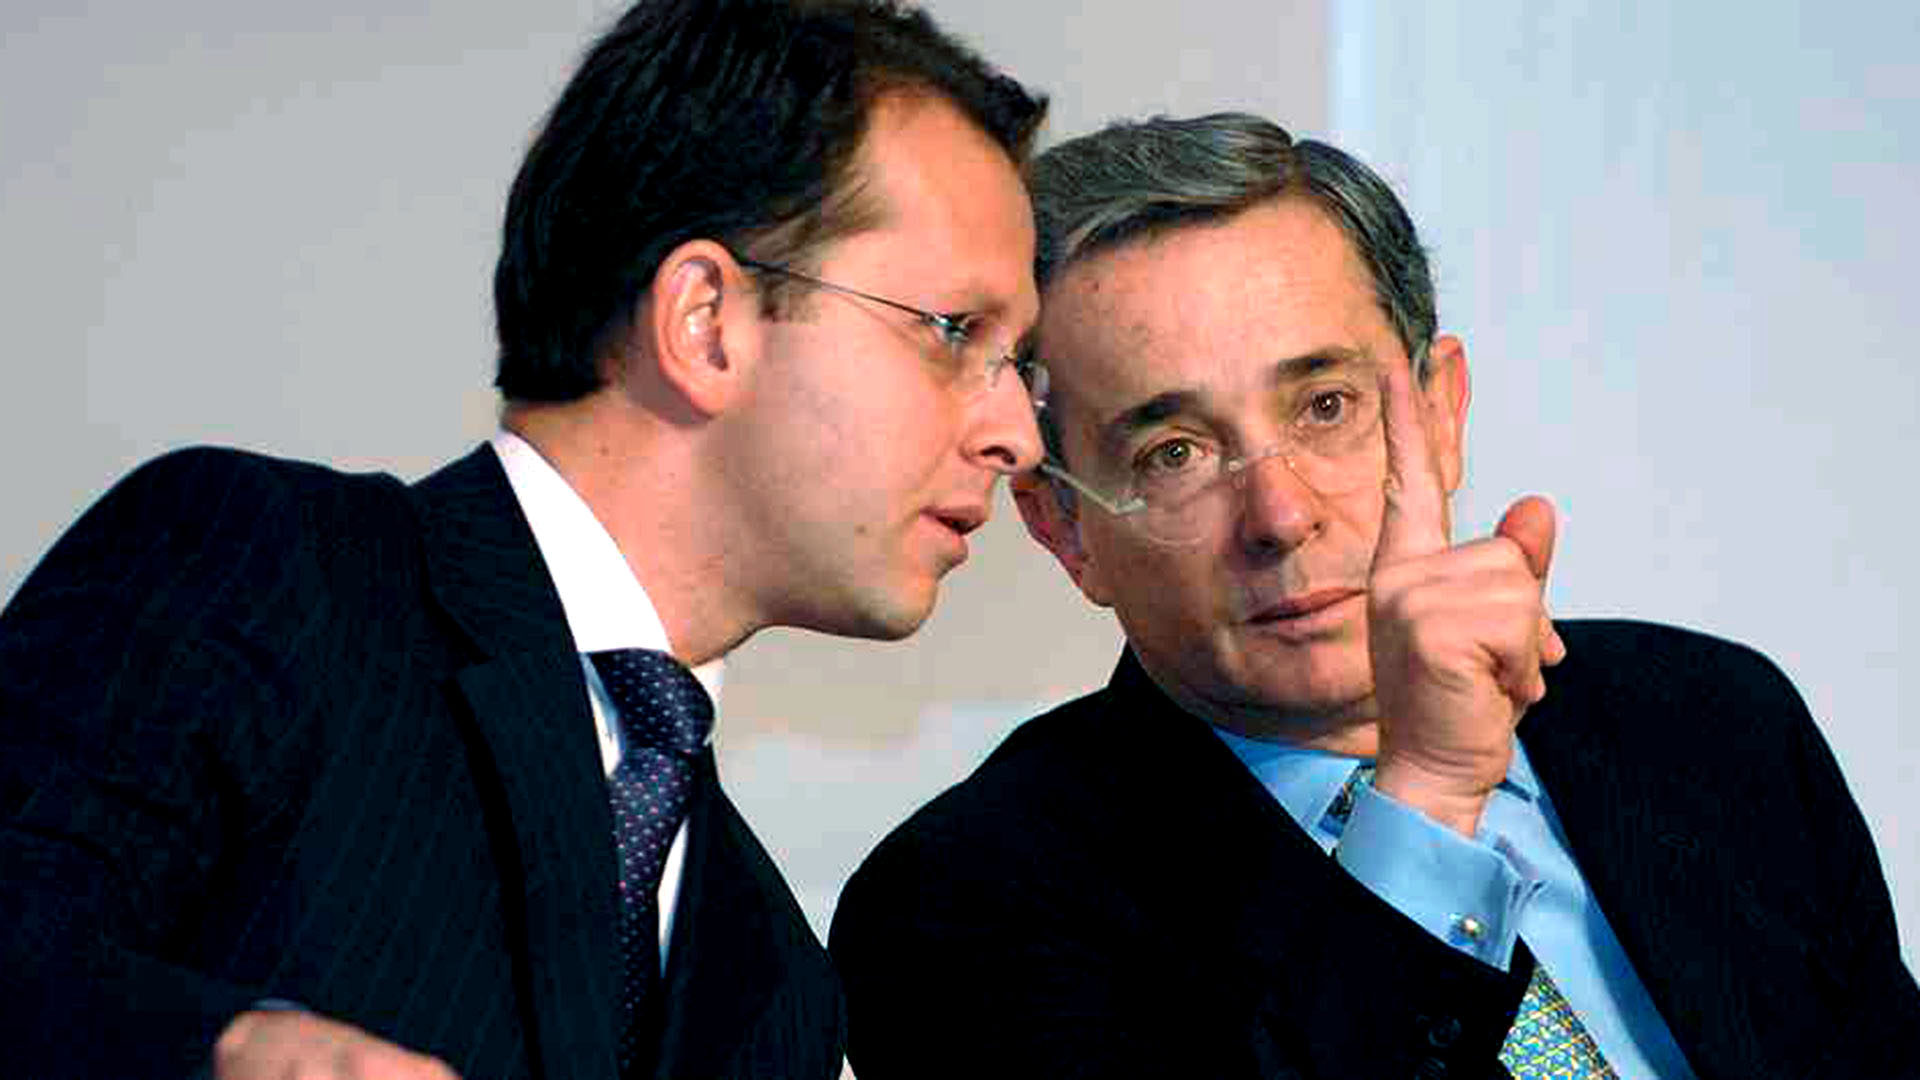 El ex ministro Andrés Felipe Arias junto a su mentor político, el ex presidente Alvaro Uribe